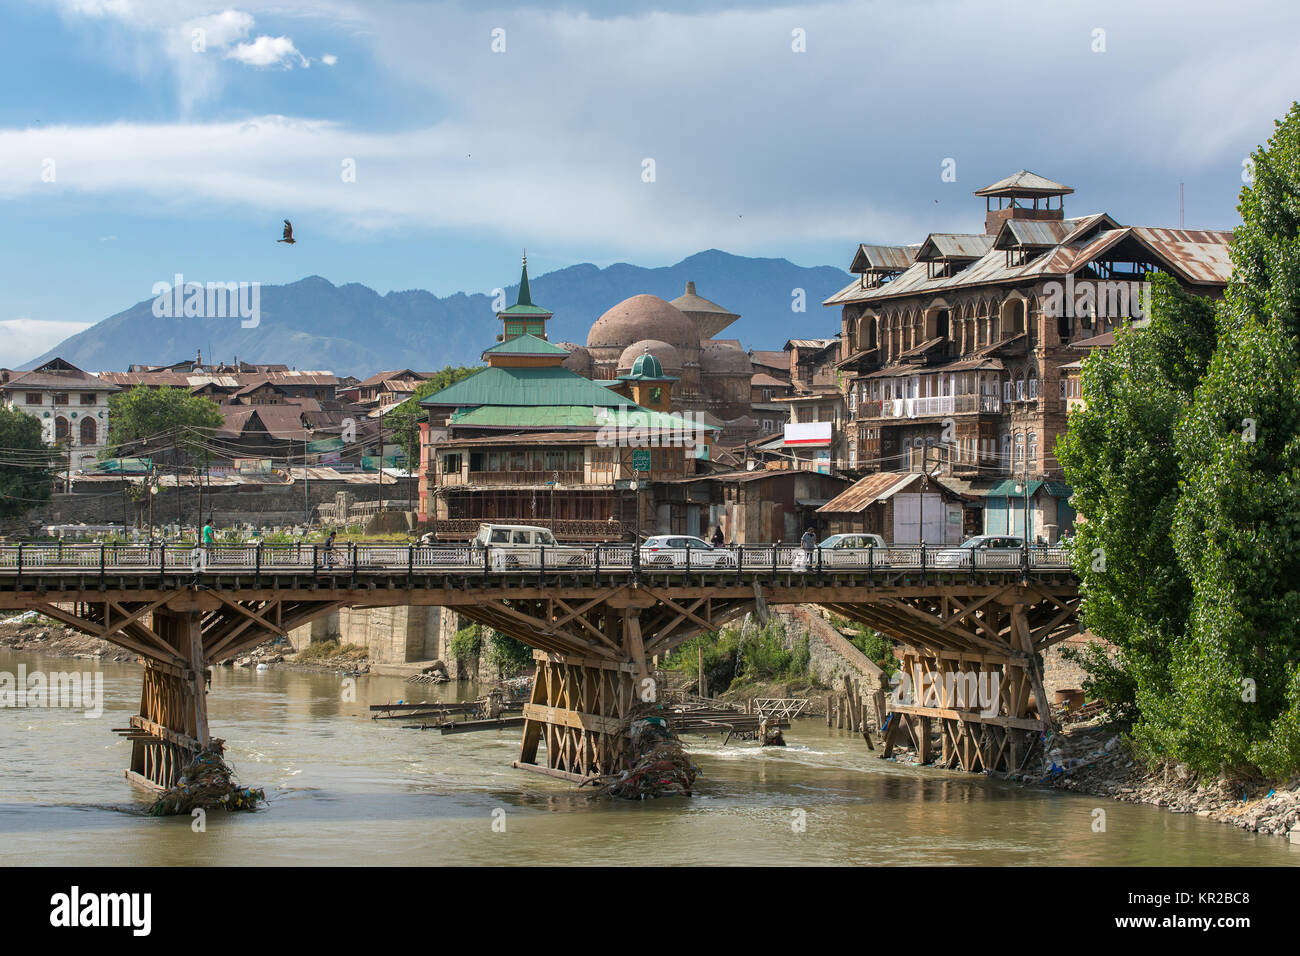 Vue de la rivière de la vieille ville de Srinagar à partir de l'un des ponts sur la rivière Jhelum, Jammu-et-Cachemire, en Inde. Banque D'Images